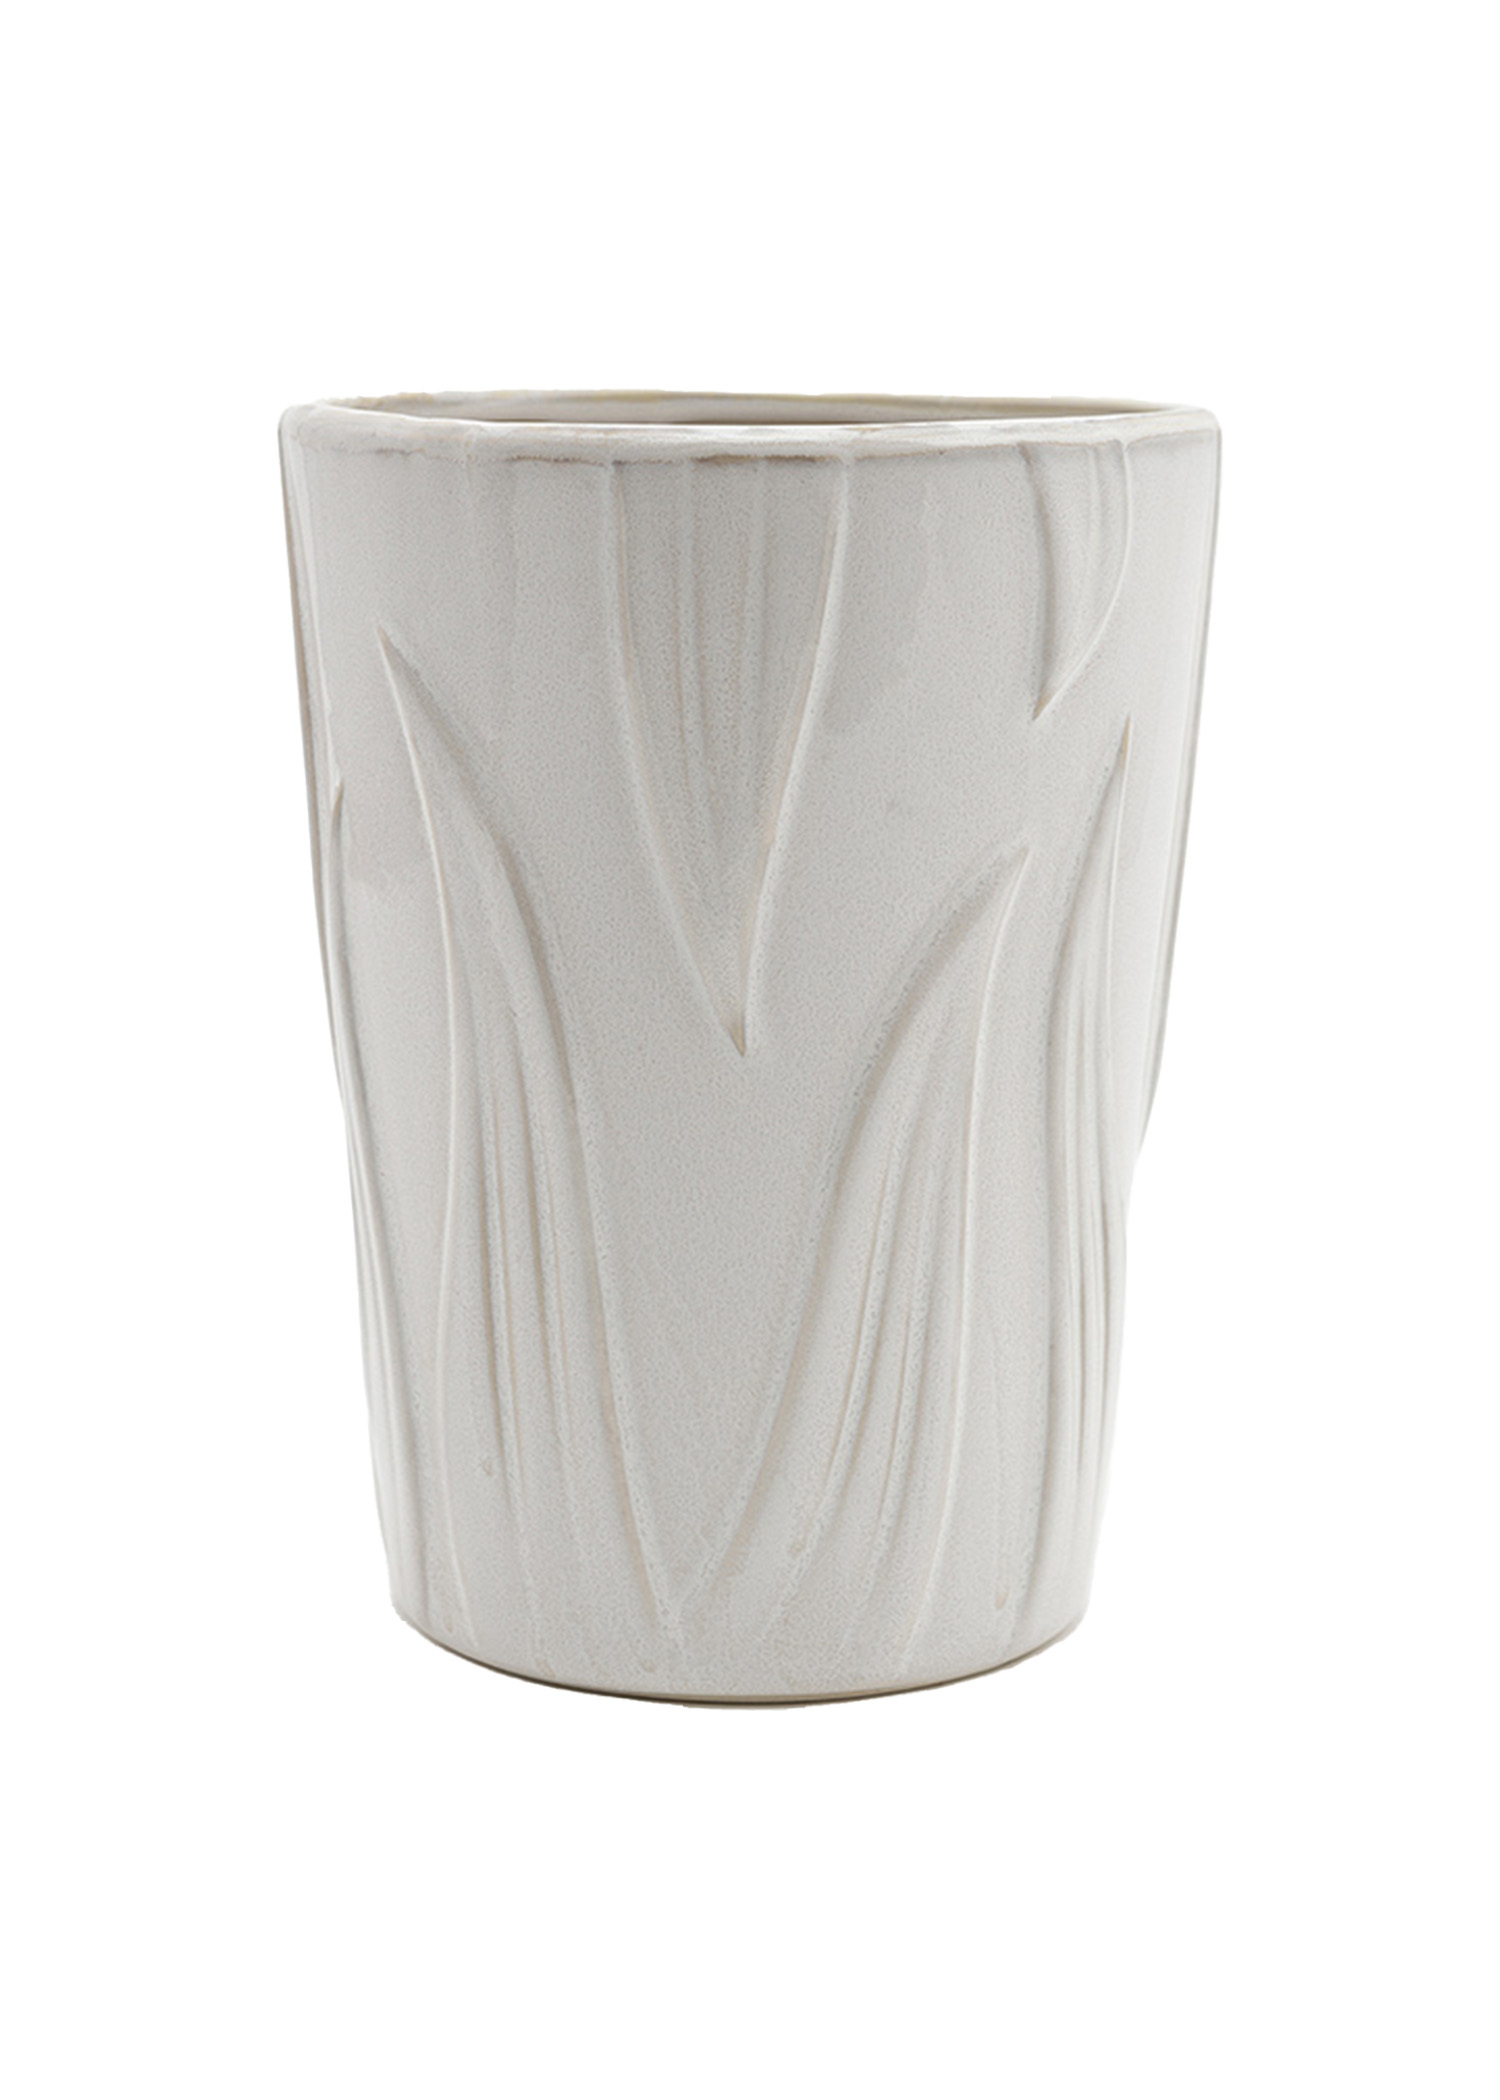 Cream coloured vase